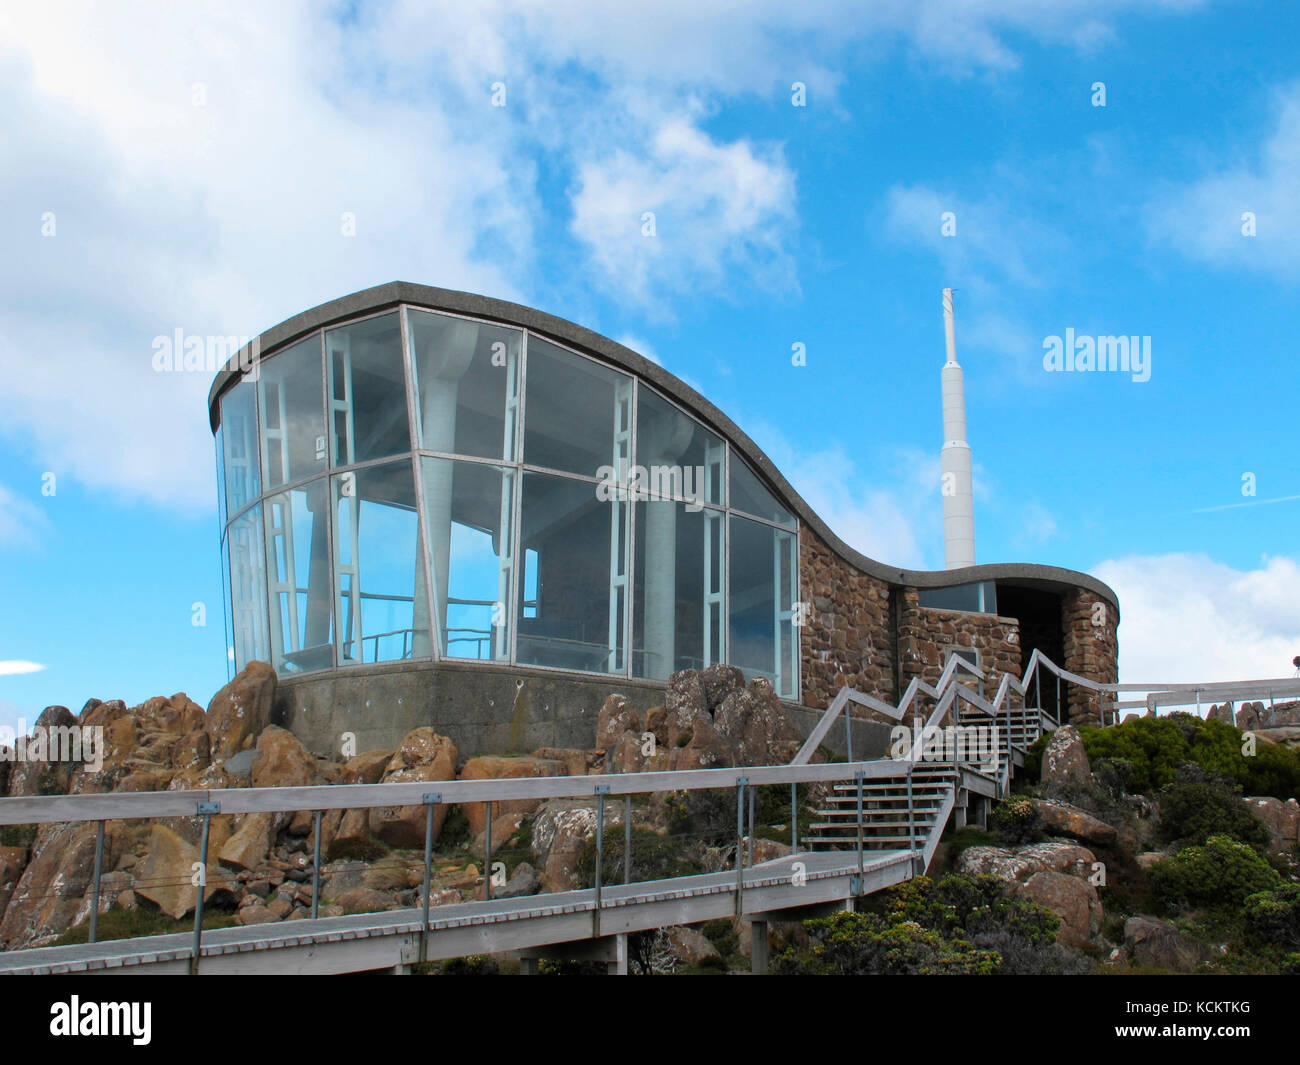 Bâtiment d’observation au sommet du mont Wellington, et au-delà, l’une des deux tours de transmission au sommet de la montagne. Hobart, Tasmanie, Australie Banque D'Images